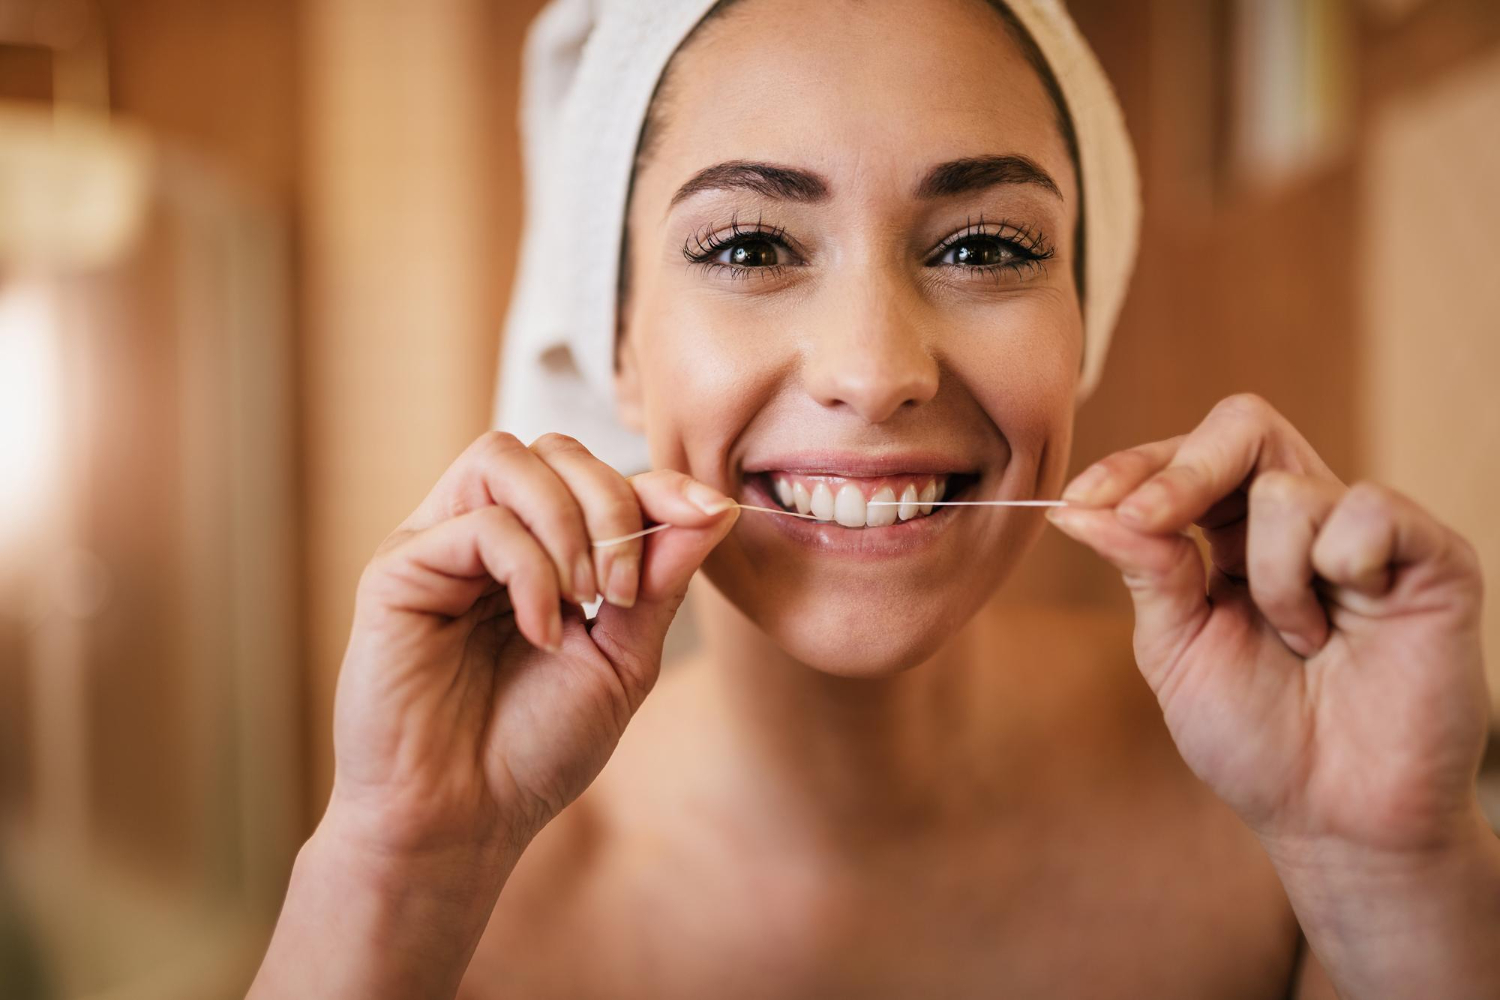 Стоматолог Симонян: для полноценной очистки зубов нужна монопучковая щётка